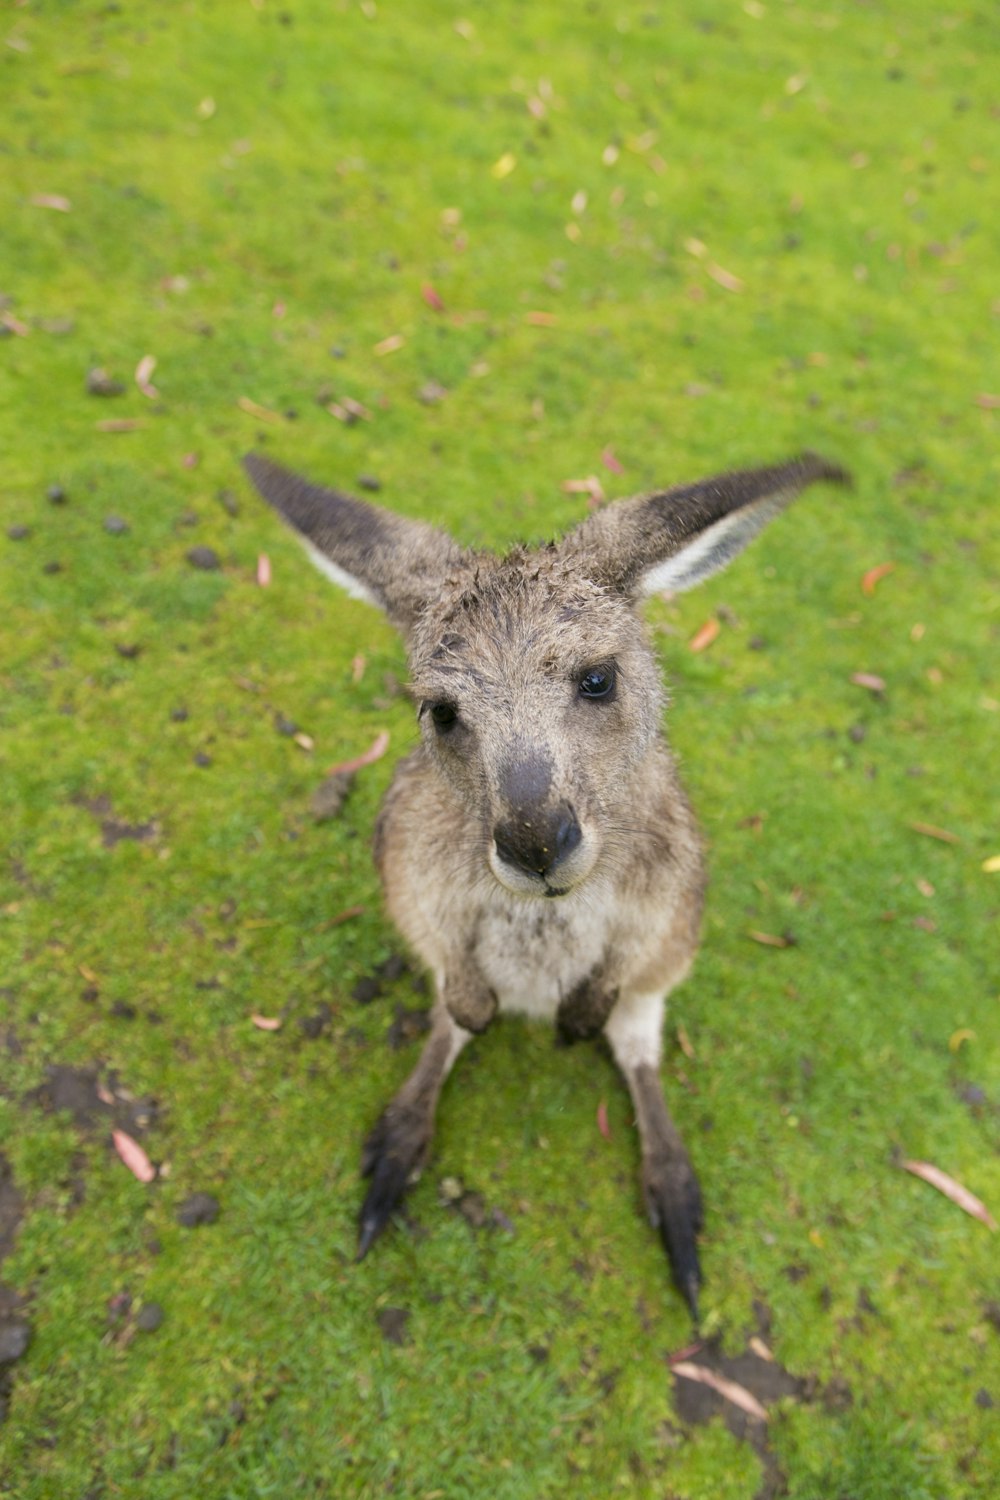 brown kangaroo joey on grass